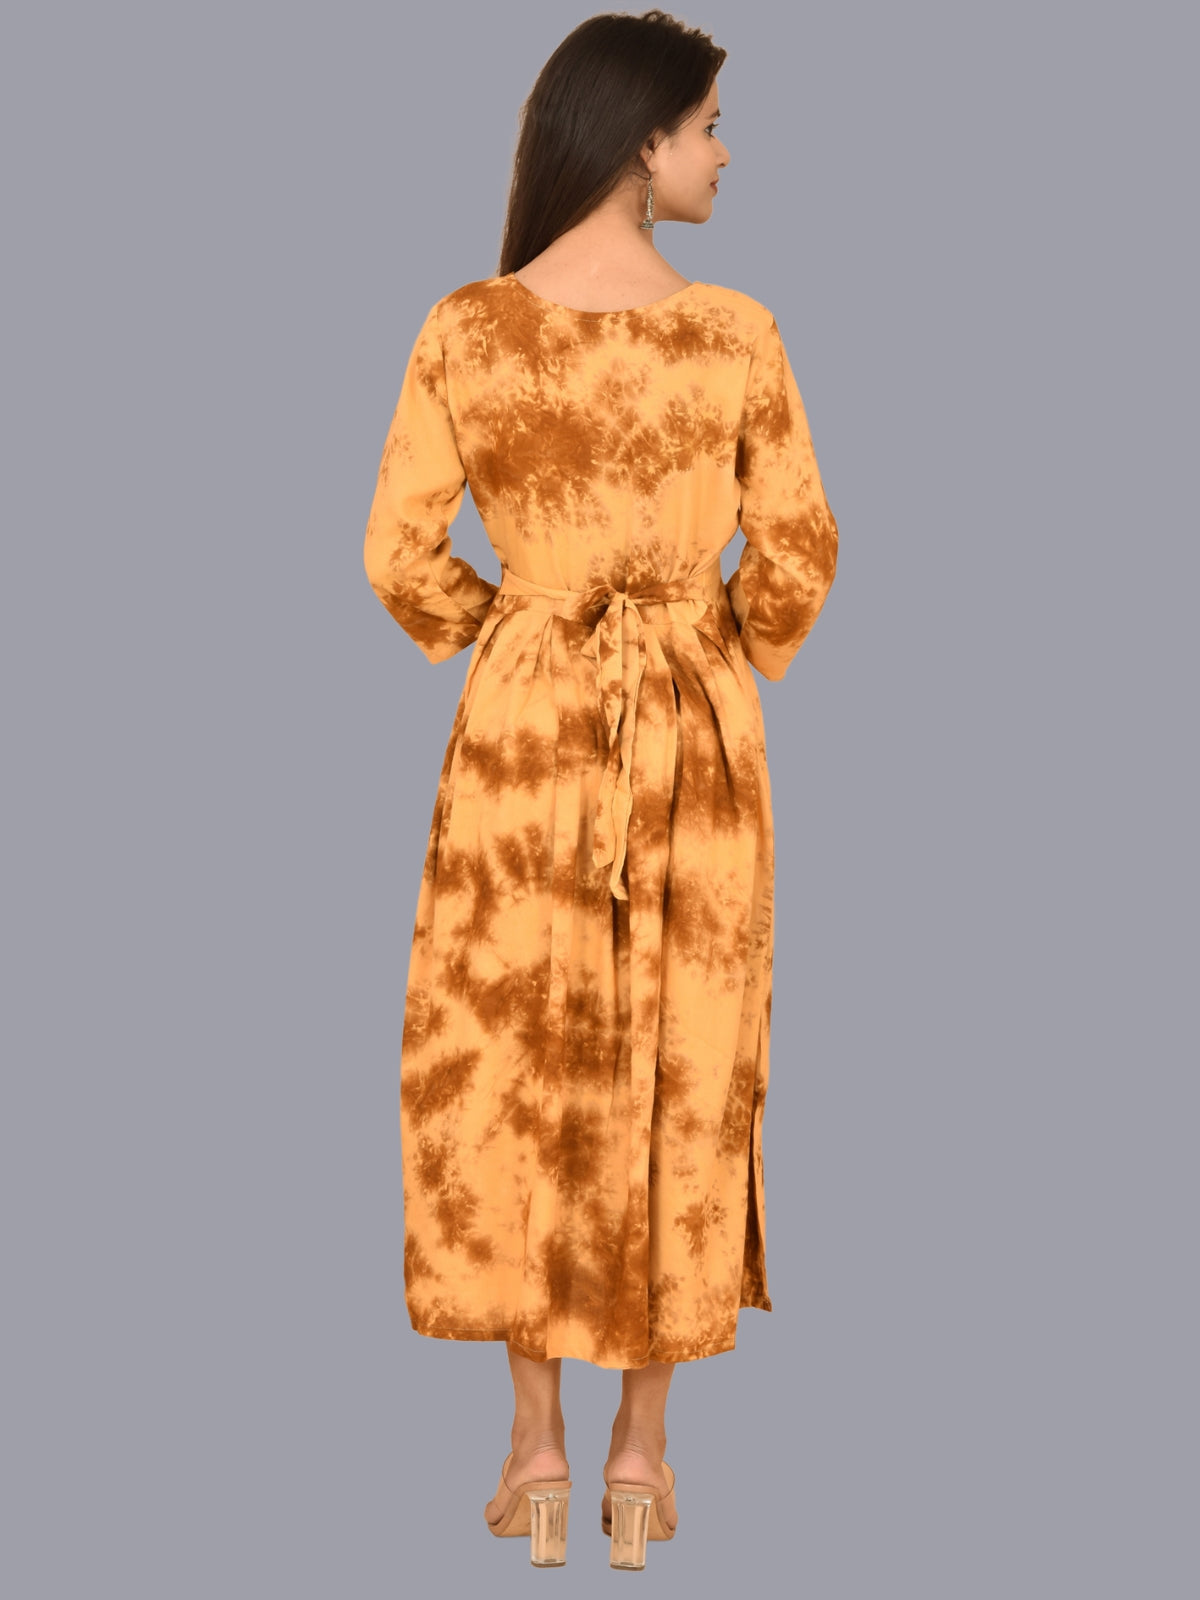 Women Beige Tie Dye Long Dress Rayon 3/4 Sleeve Dress